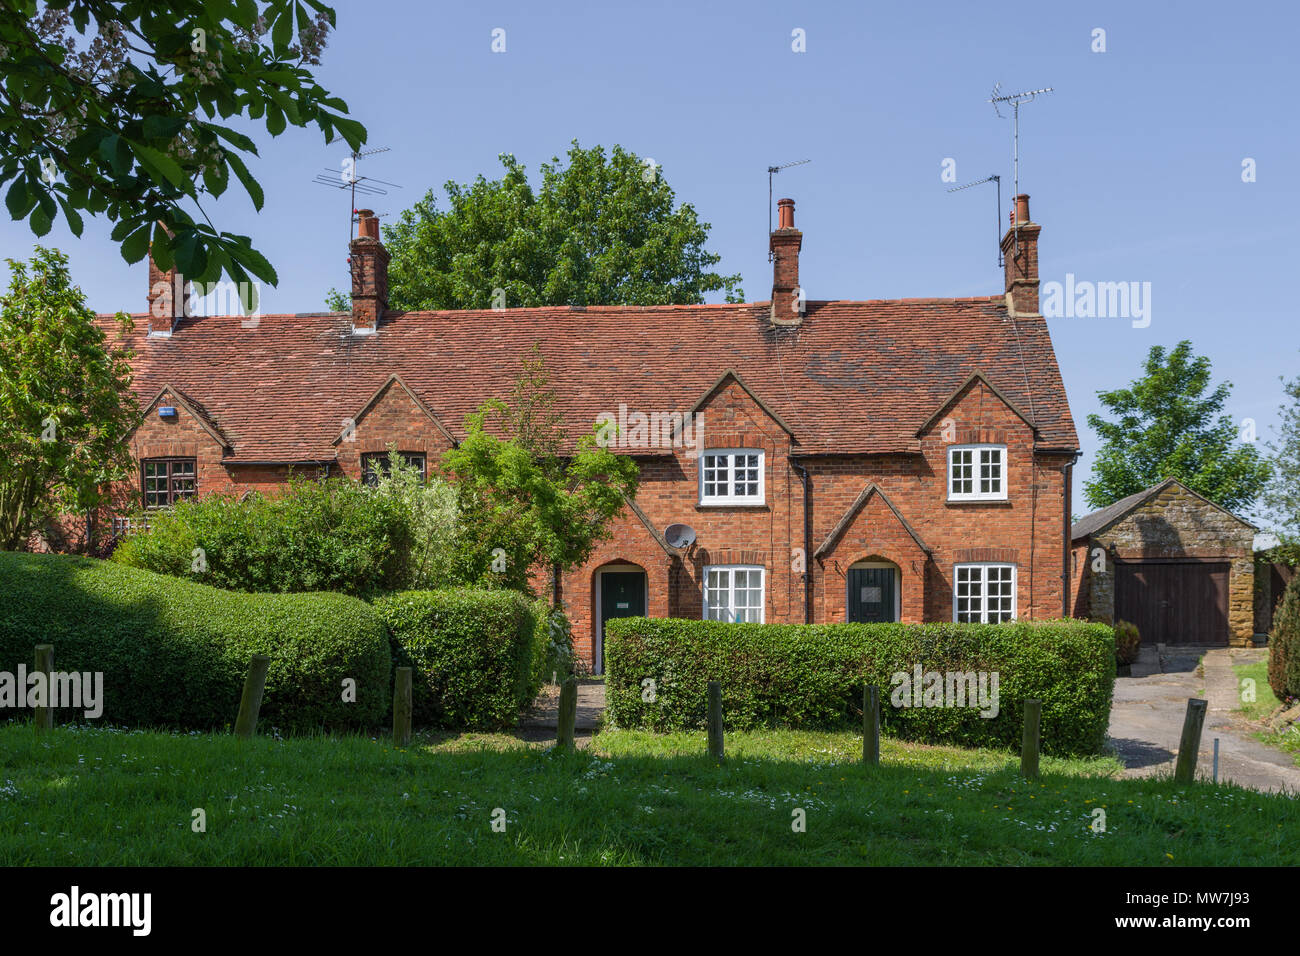 Terrazza di mattoni vecchi cottage costruito che si affaccia sul verde villaggio, grande Brington, Northamptonshire, Regno Unito Foto Stock